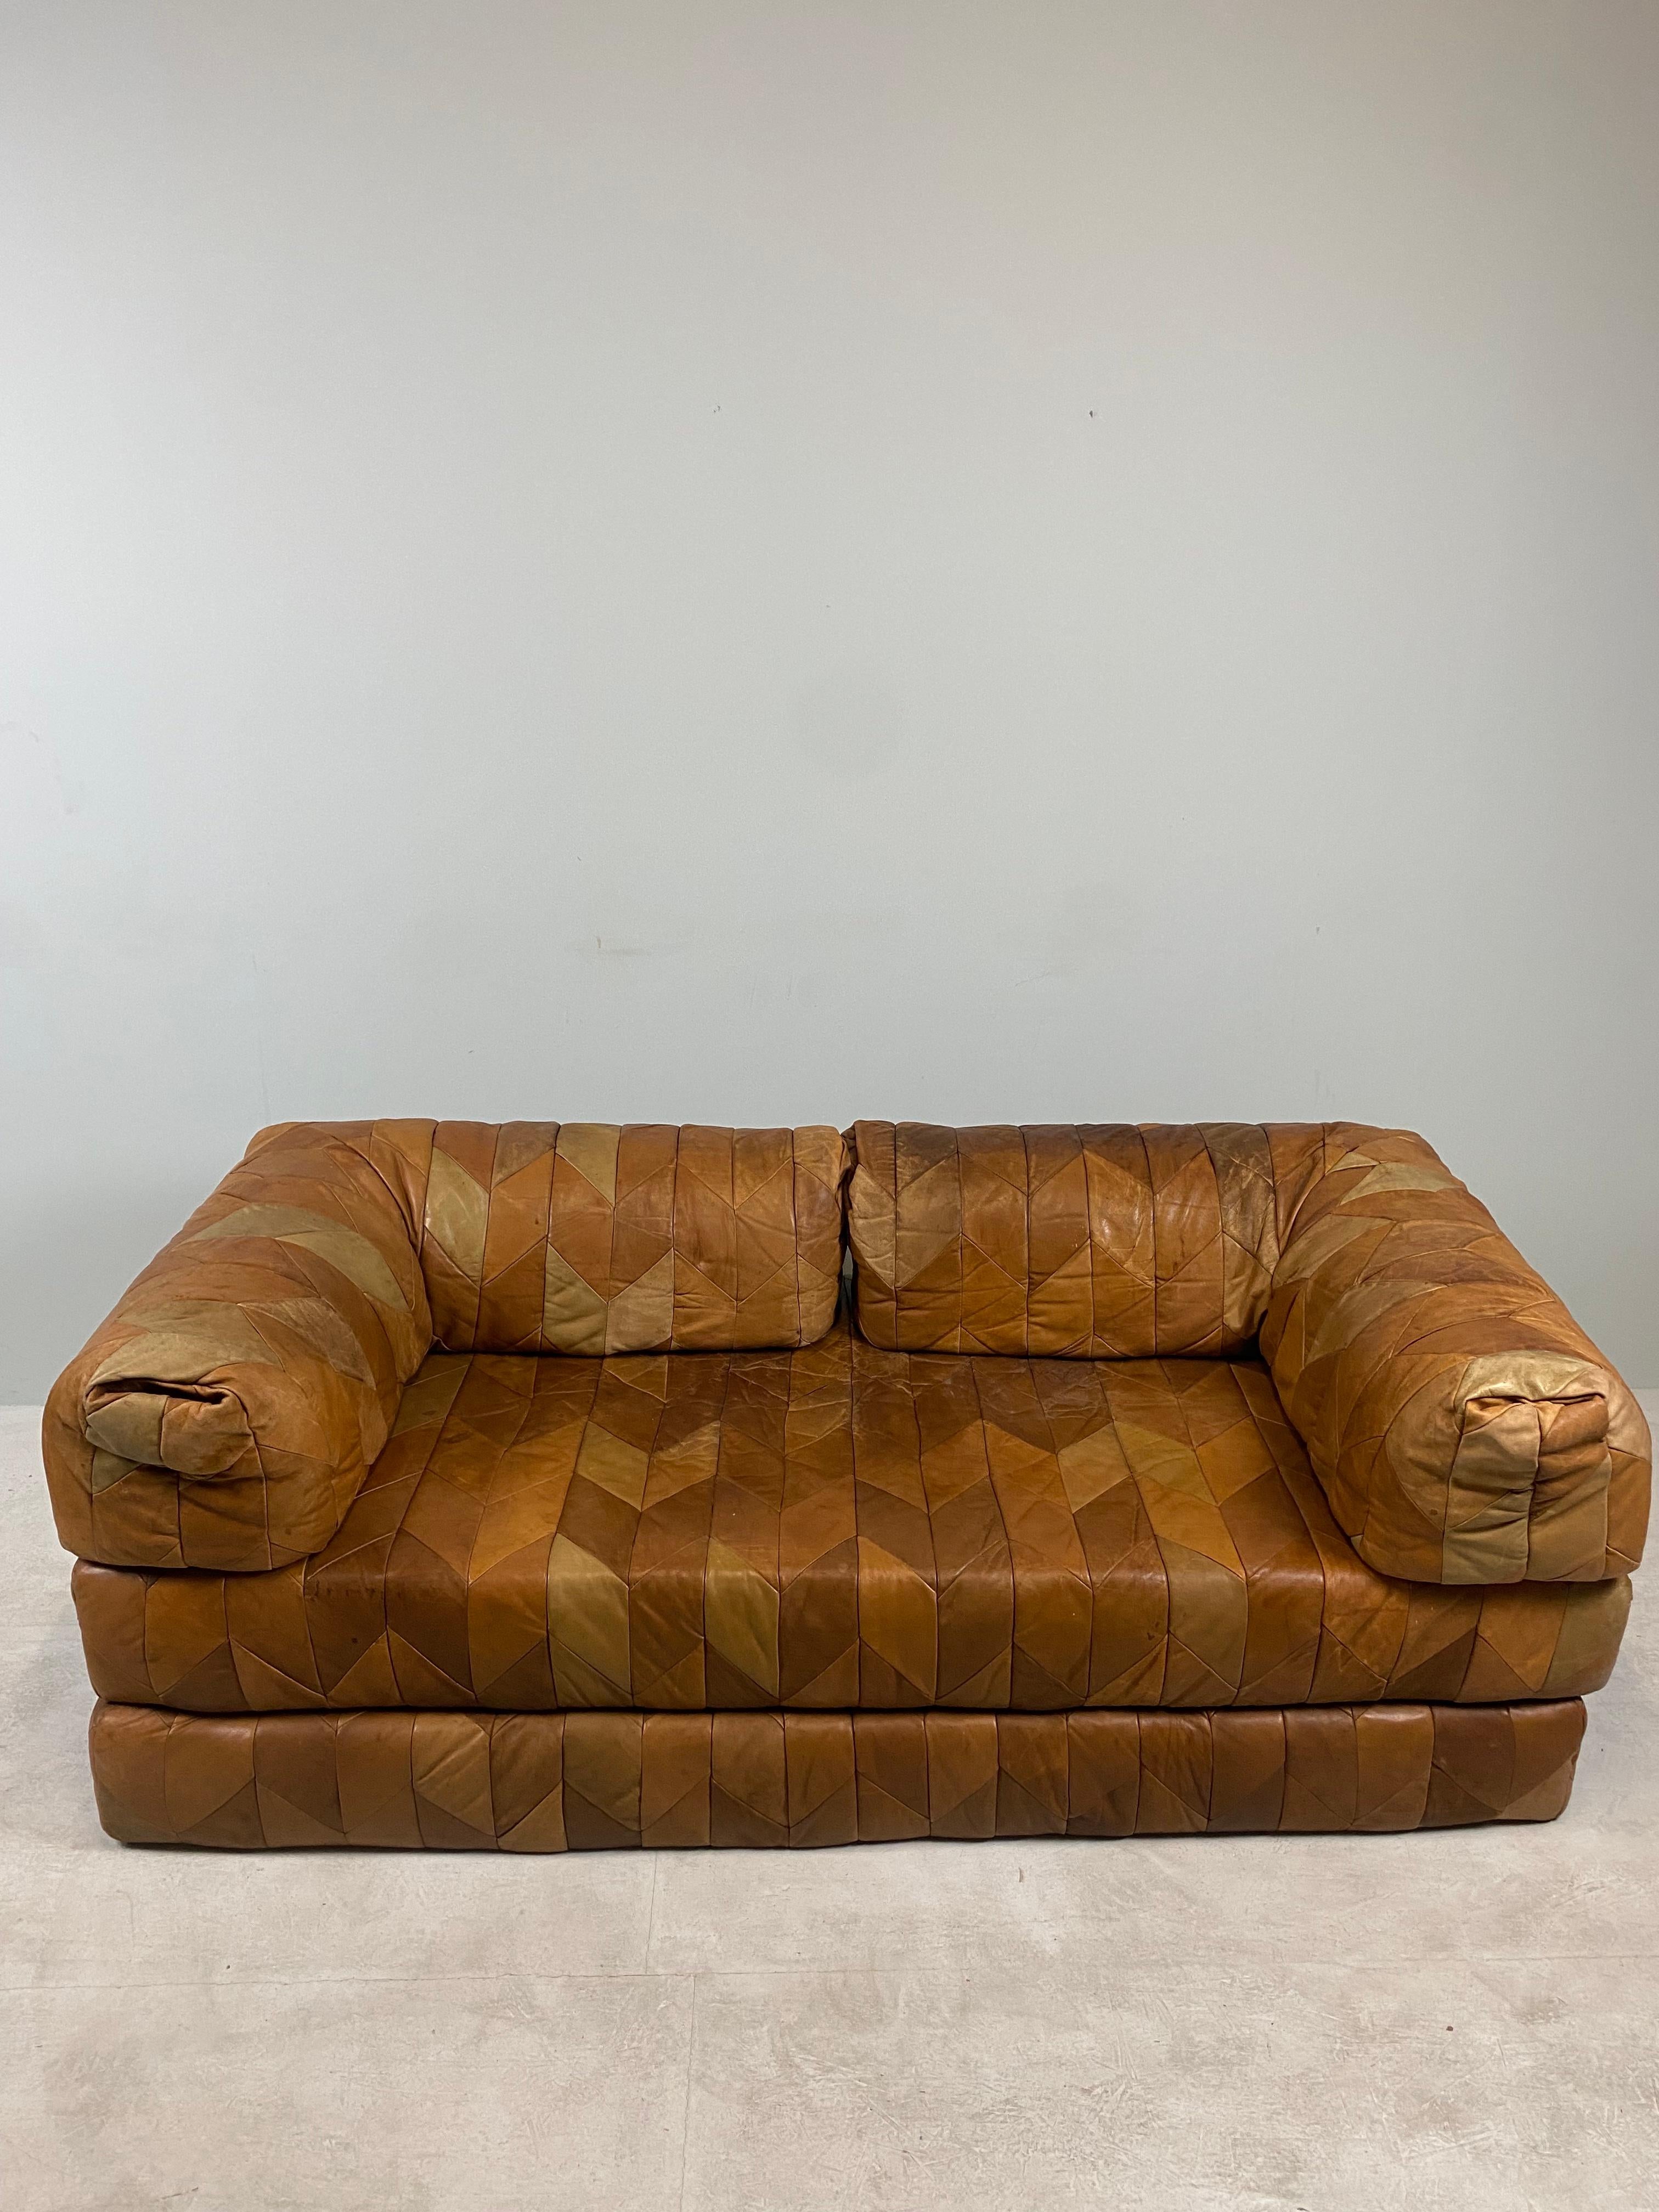 Schönes und seltenes Leder-Patchwork-Sofa DS88, entworfen von De Sede Team, Schweiz 1970. Das Sofa ist durch die verschiedenen Lederteile einzigartig. Auch als Ausziehsofa geeignet, auf dem man wunderbar schlafen kann. Das Sofa ist in gutem Zustand